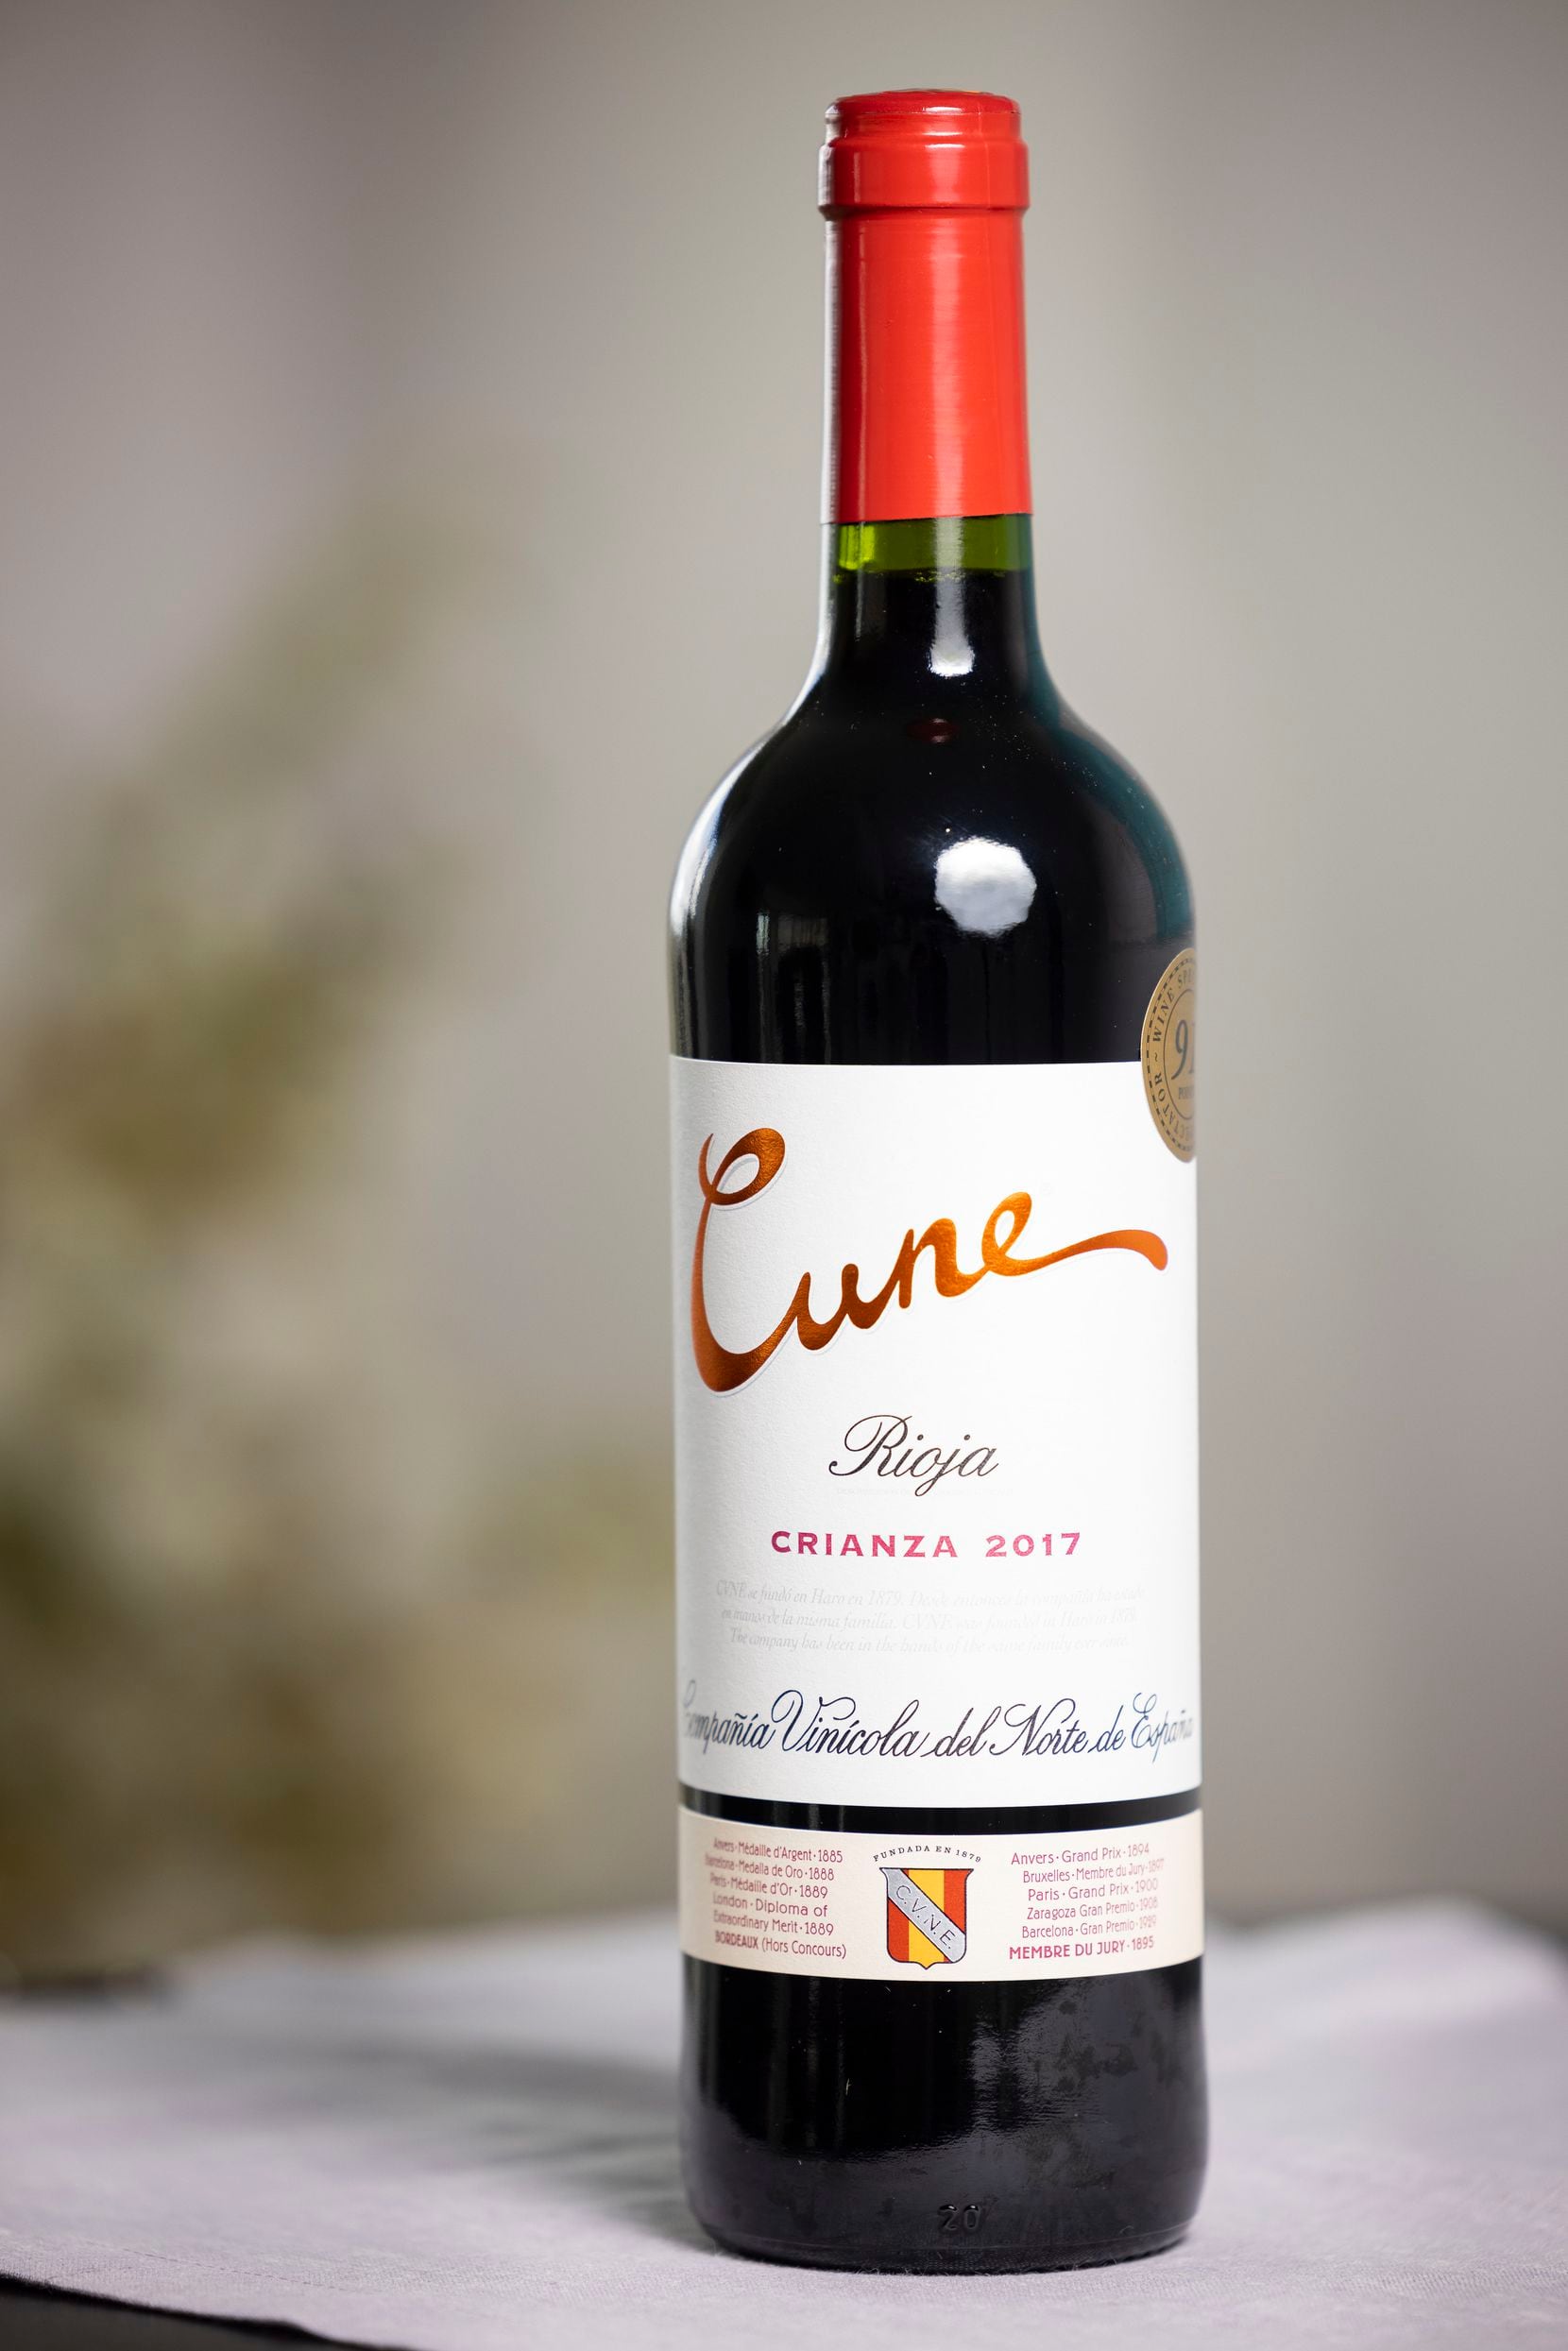 A bottle of Cune Rioja Crianza 2017 